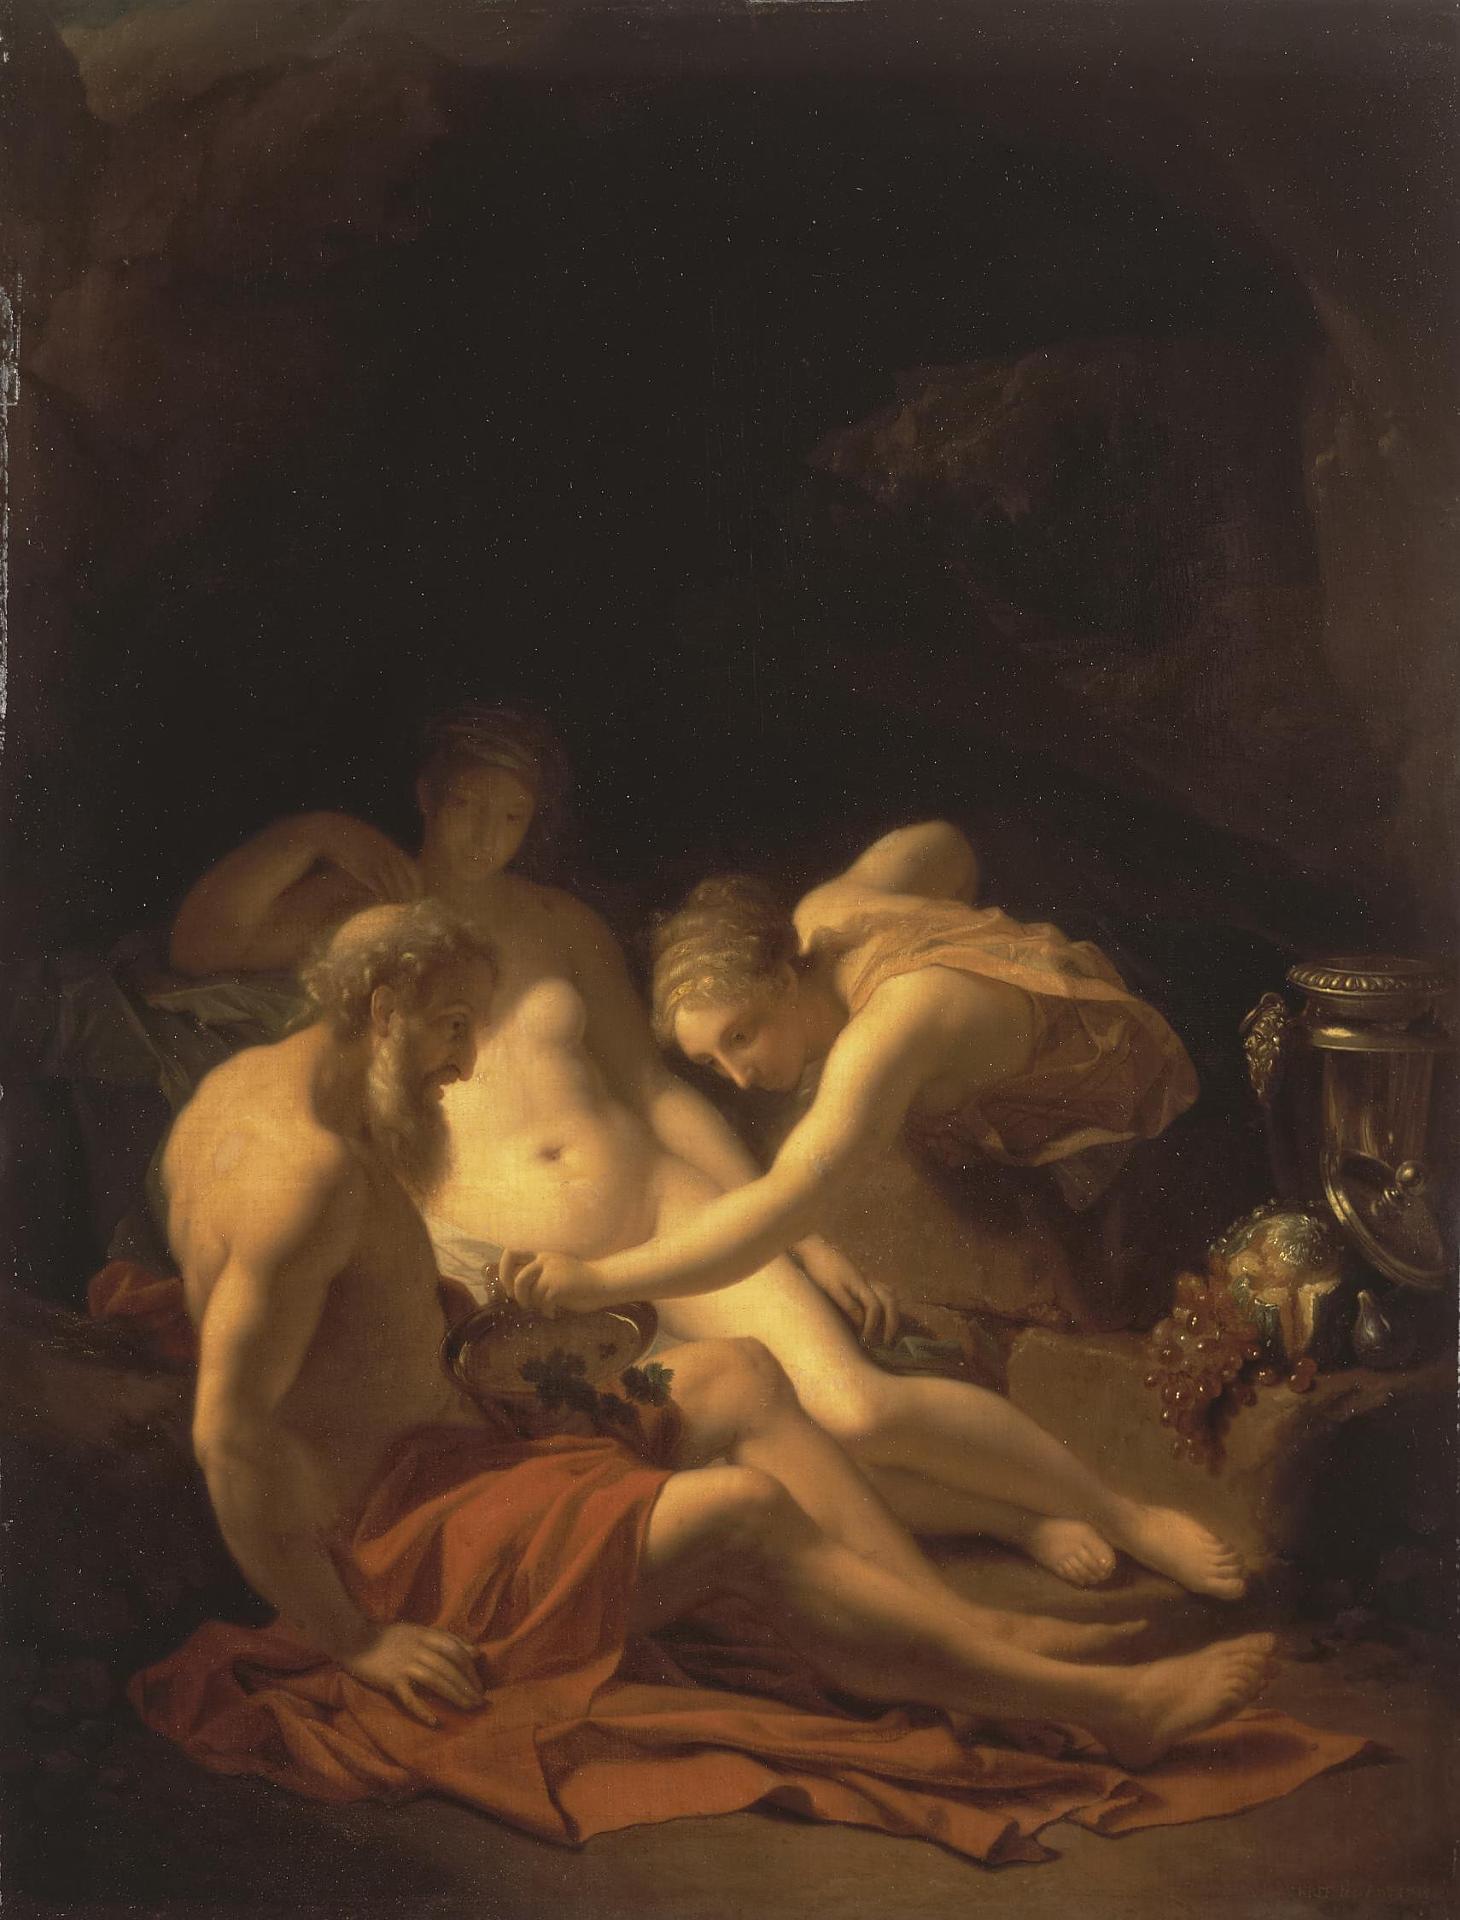 Адриан ван дер Верф. "Лот с дочерьми". 1711. Эрмитаж, Санкт-Петербург.